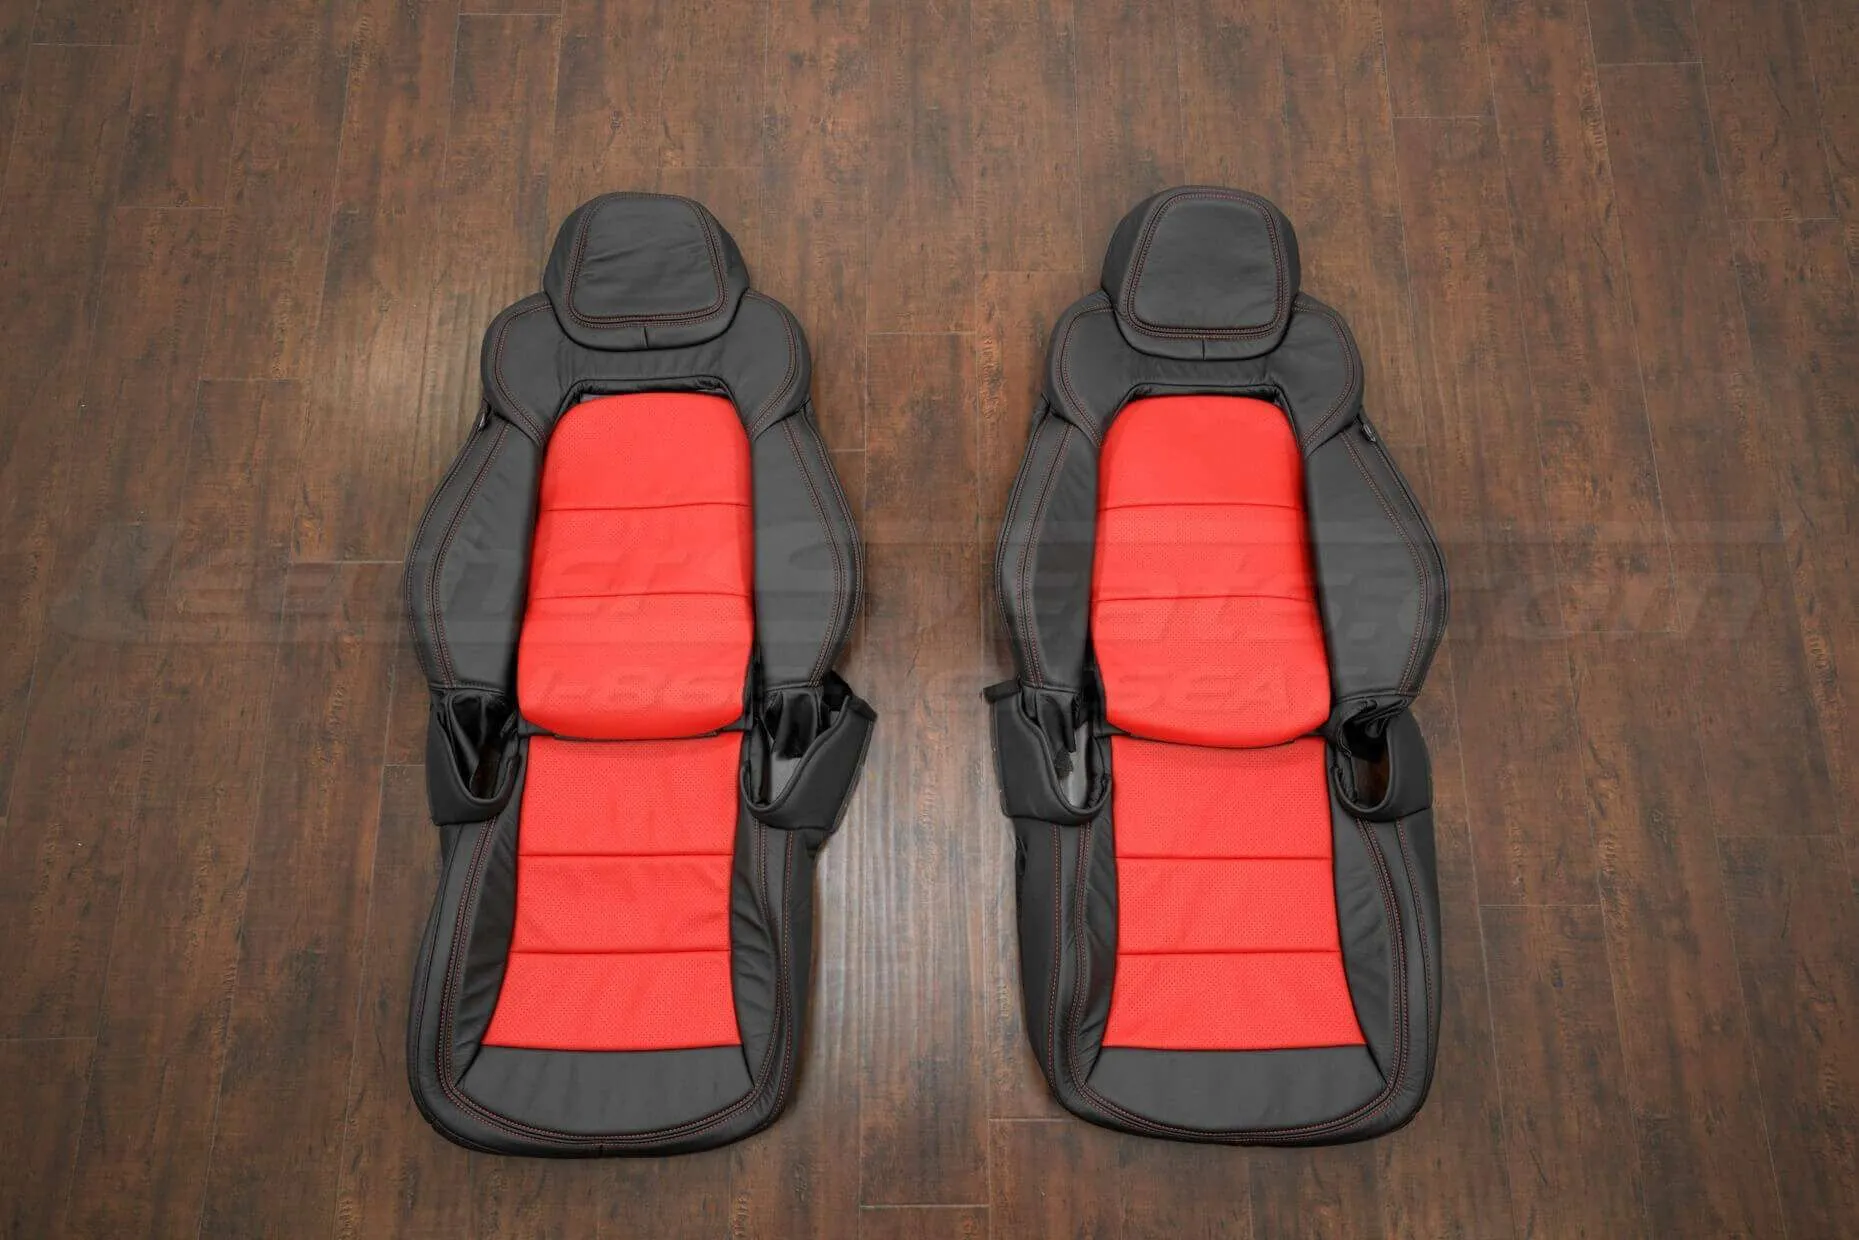 05-13 Chevrolet Corvette Upholstery Kit - Black & Bright Red - Front seat upholstery